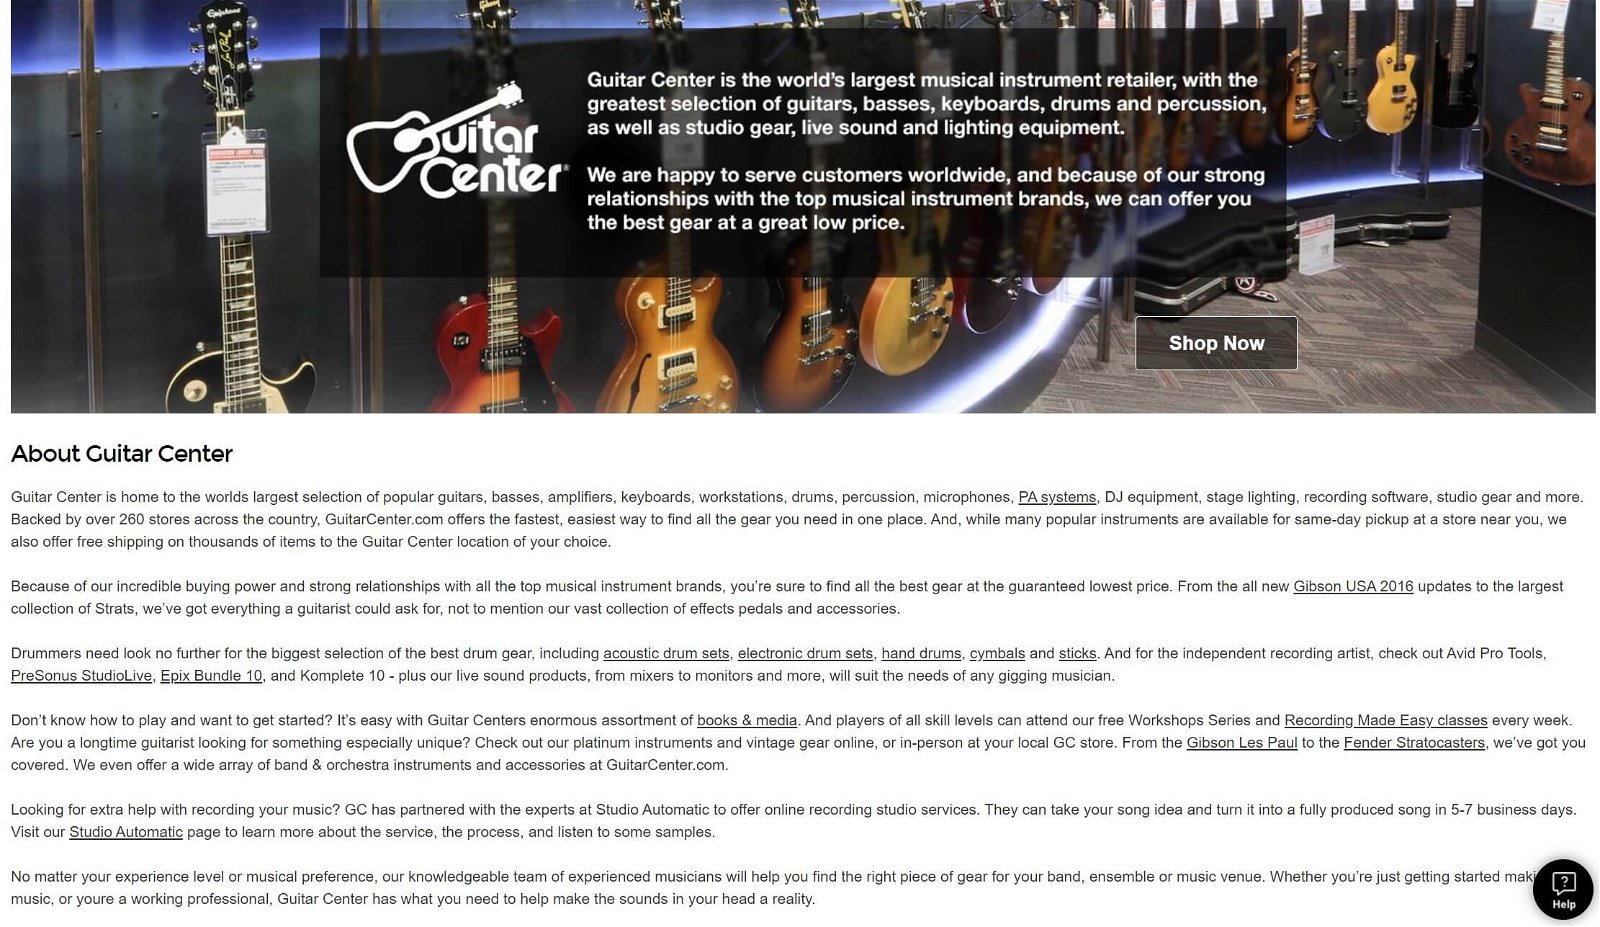 Guitar Center interface